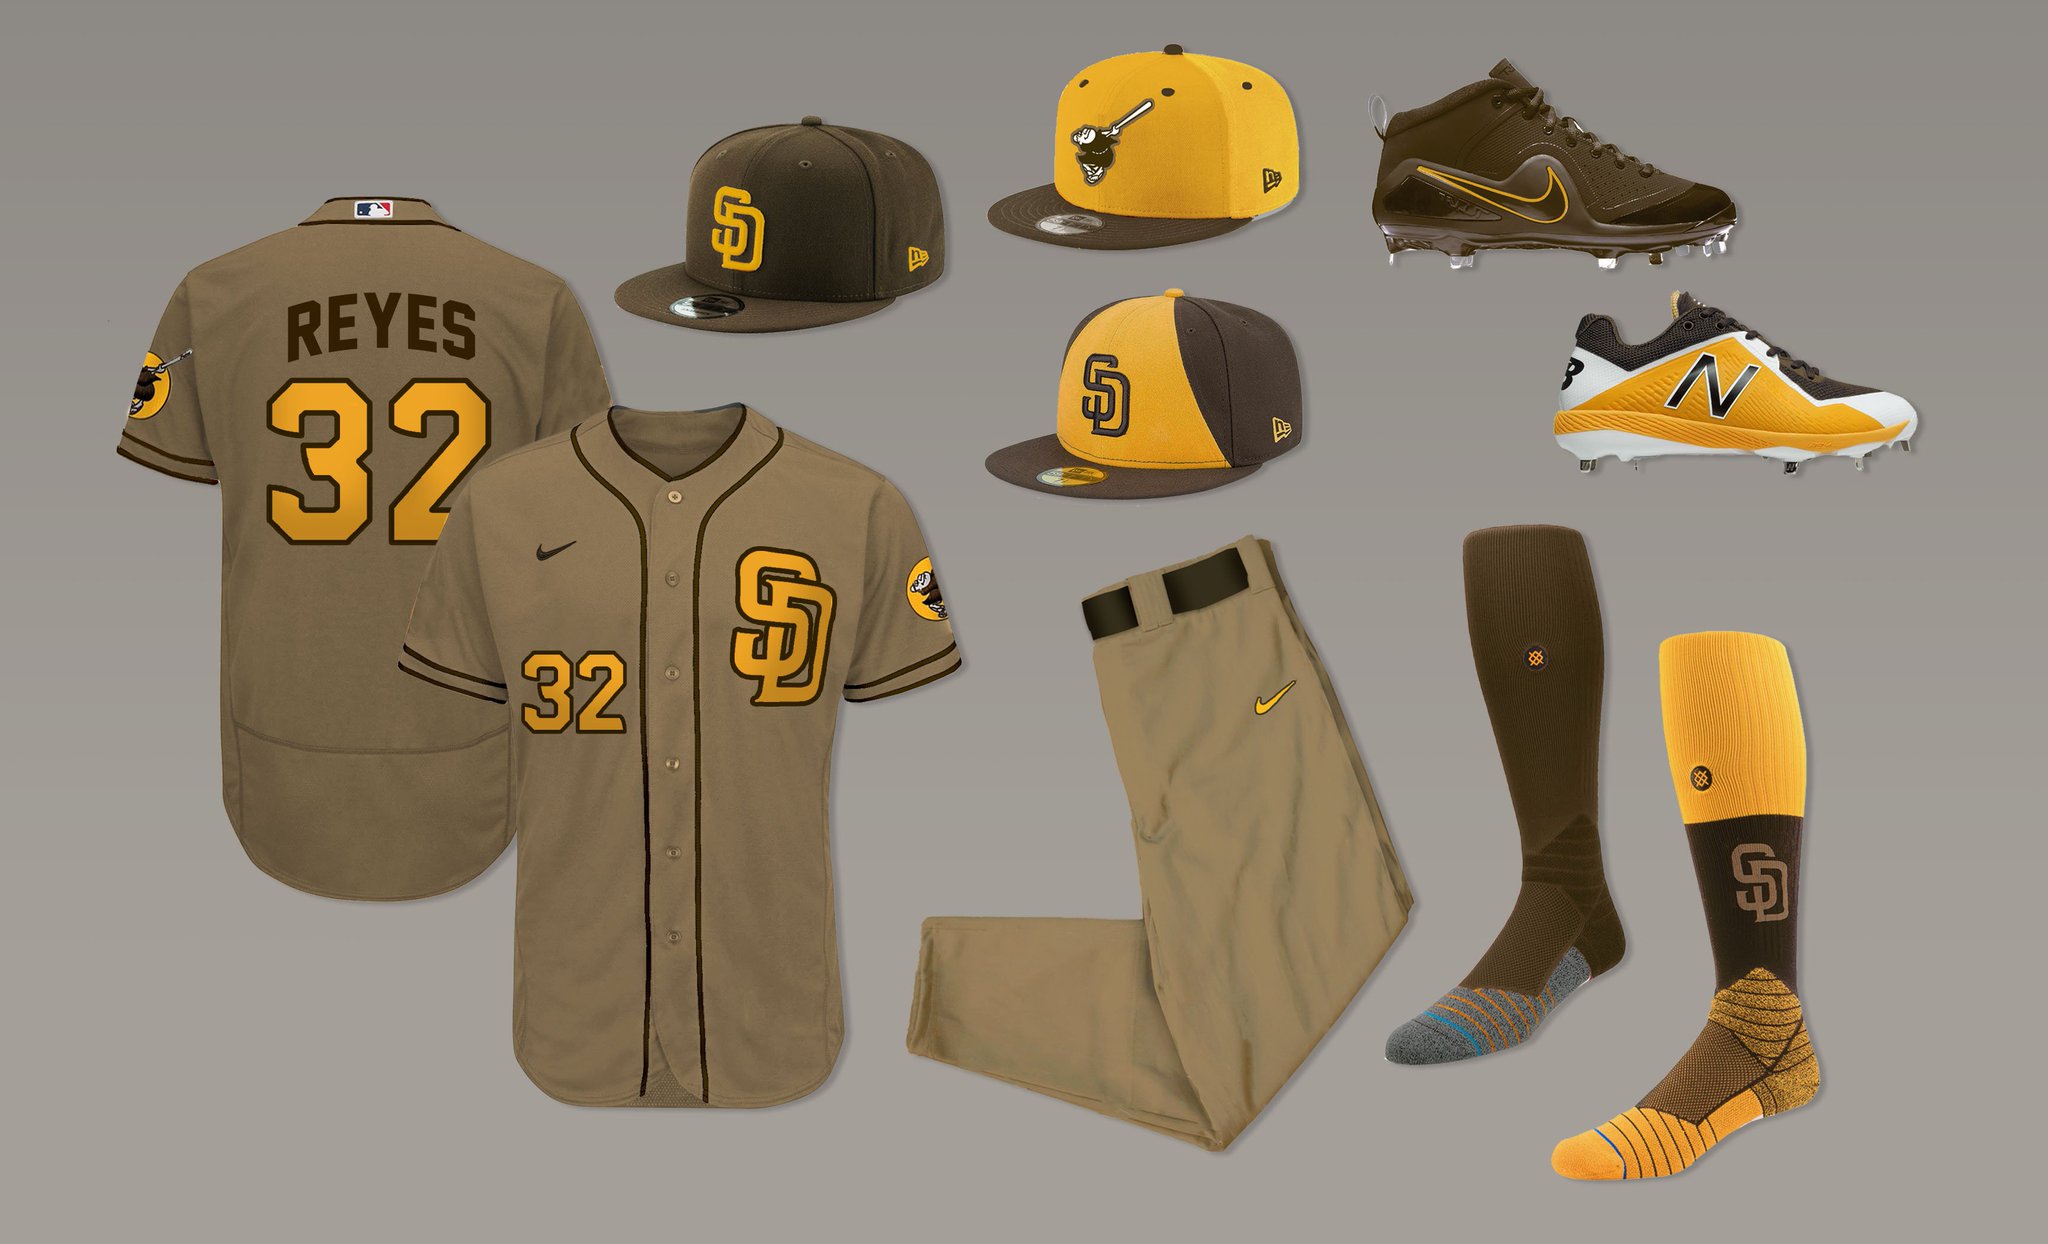 rockies 2020 uniforms